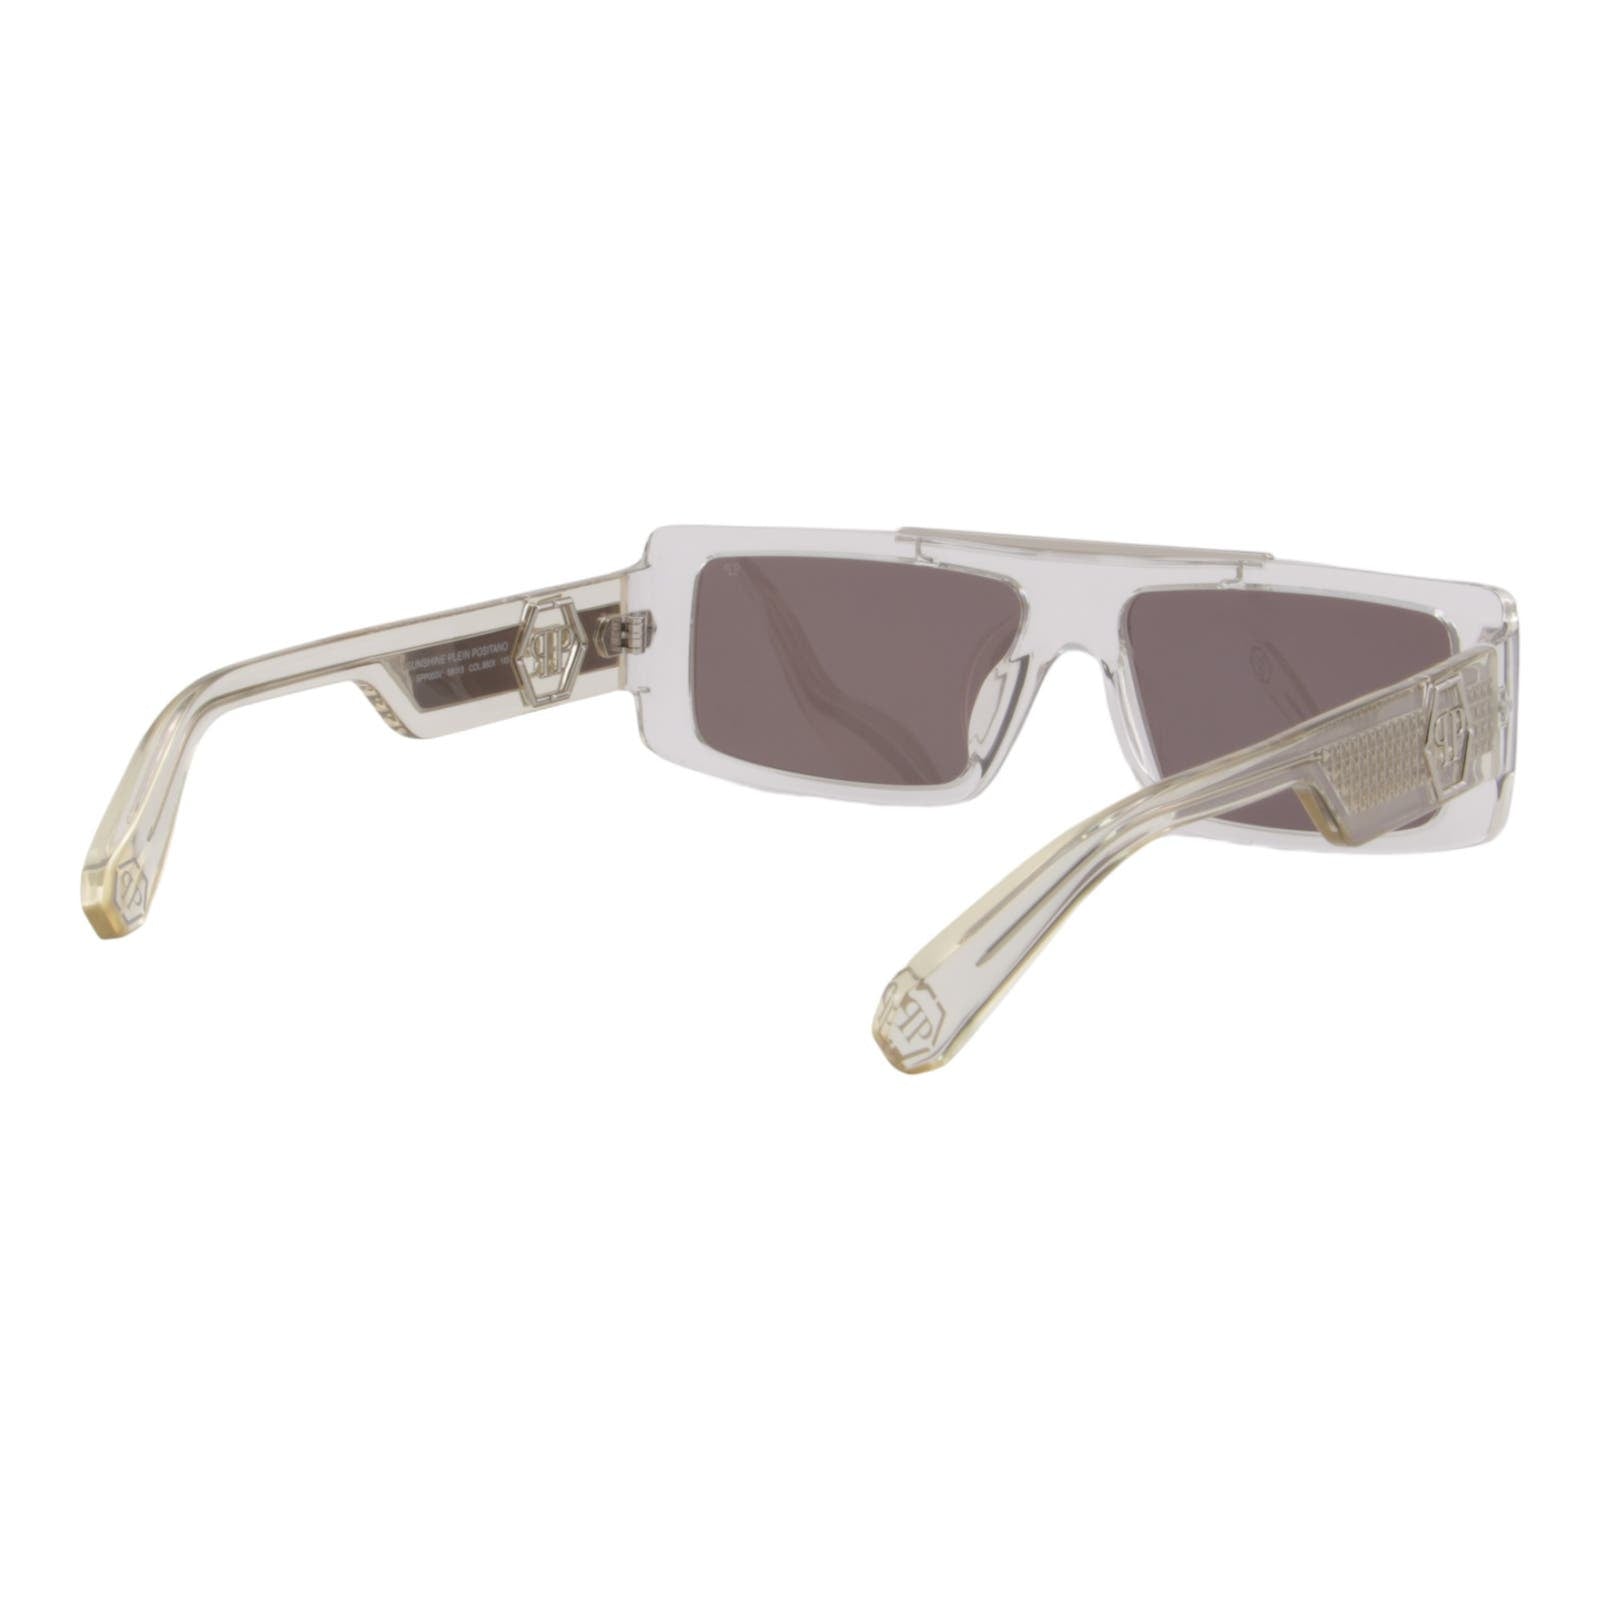 Men Slim Rectangular Sunglasses SPP003V-880X Mirrored Lens